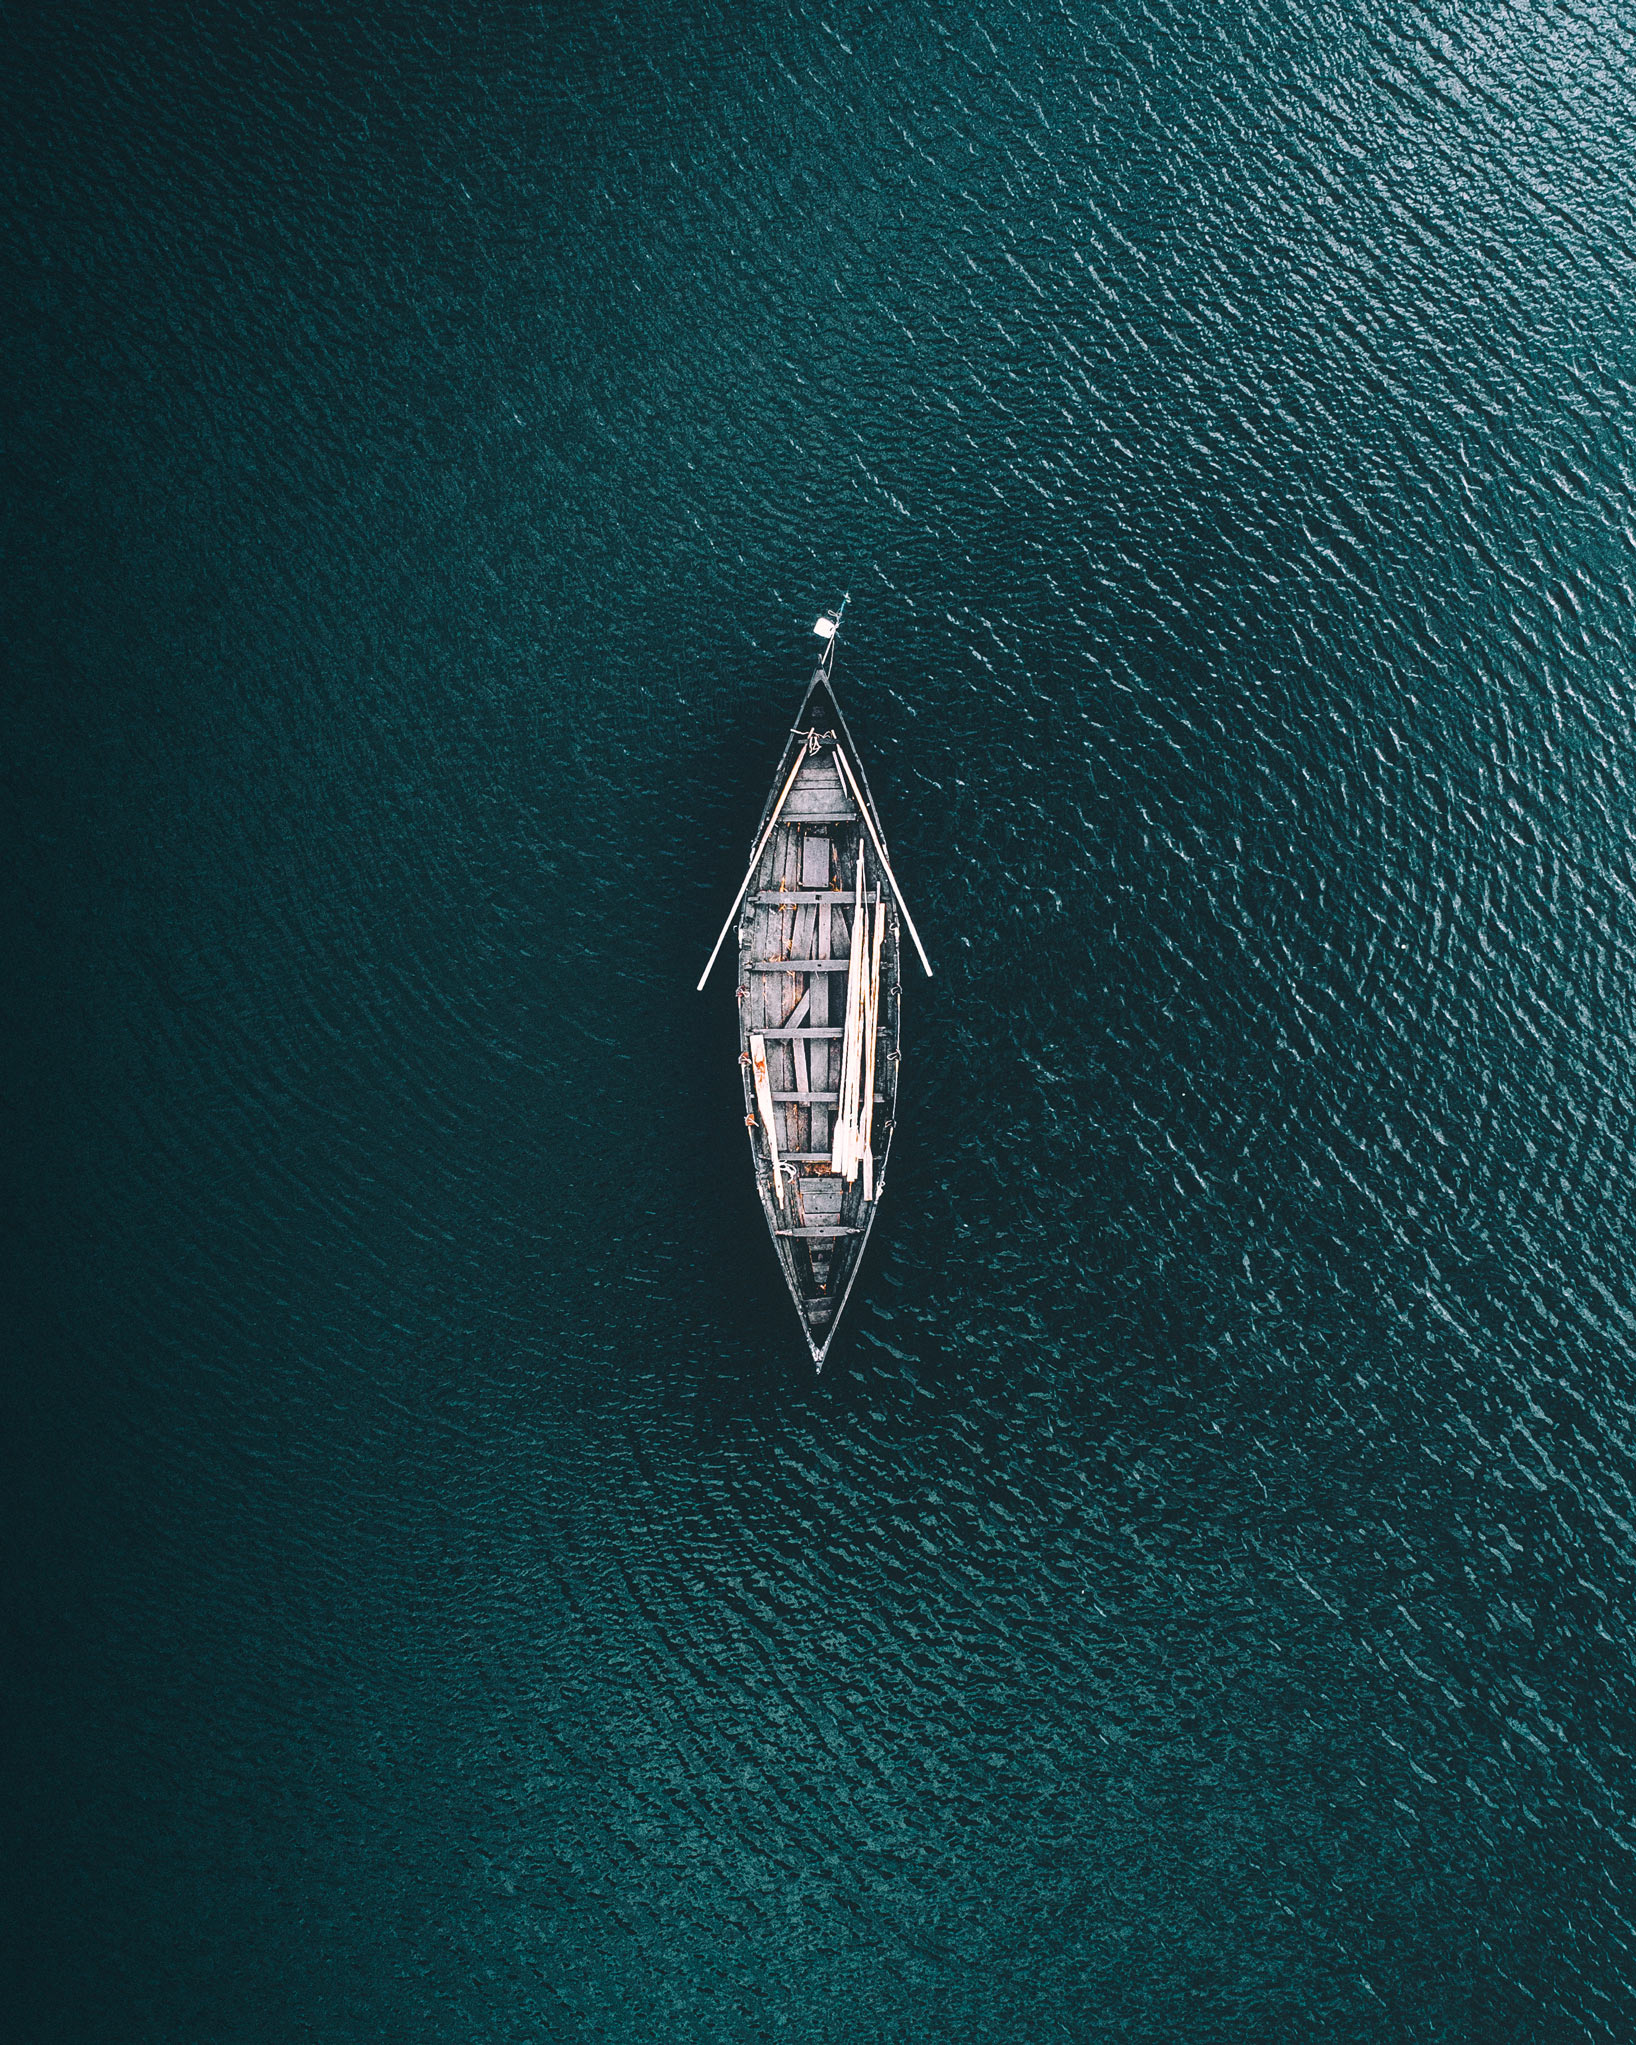 rowboat.jpg